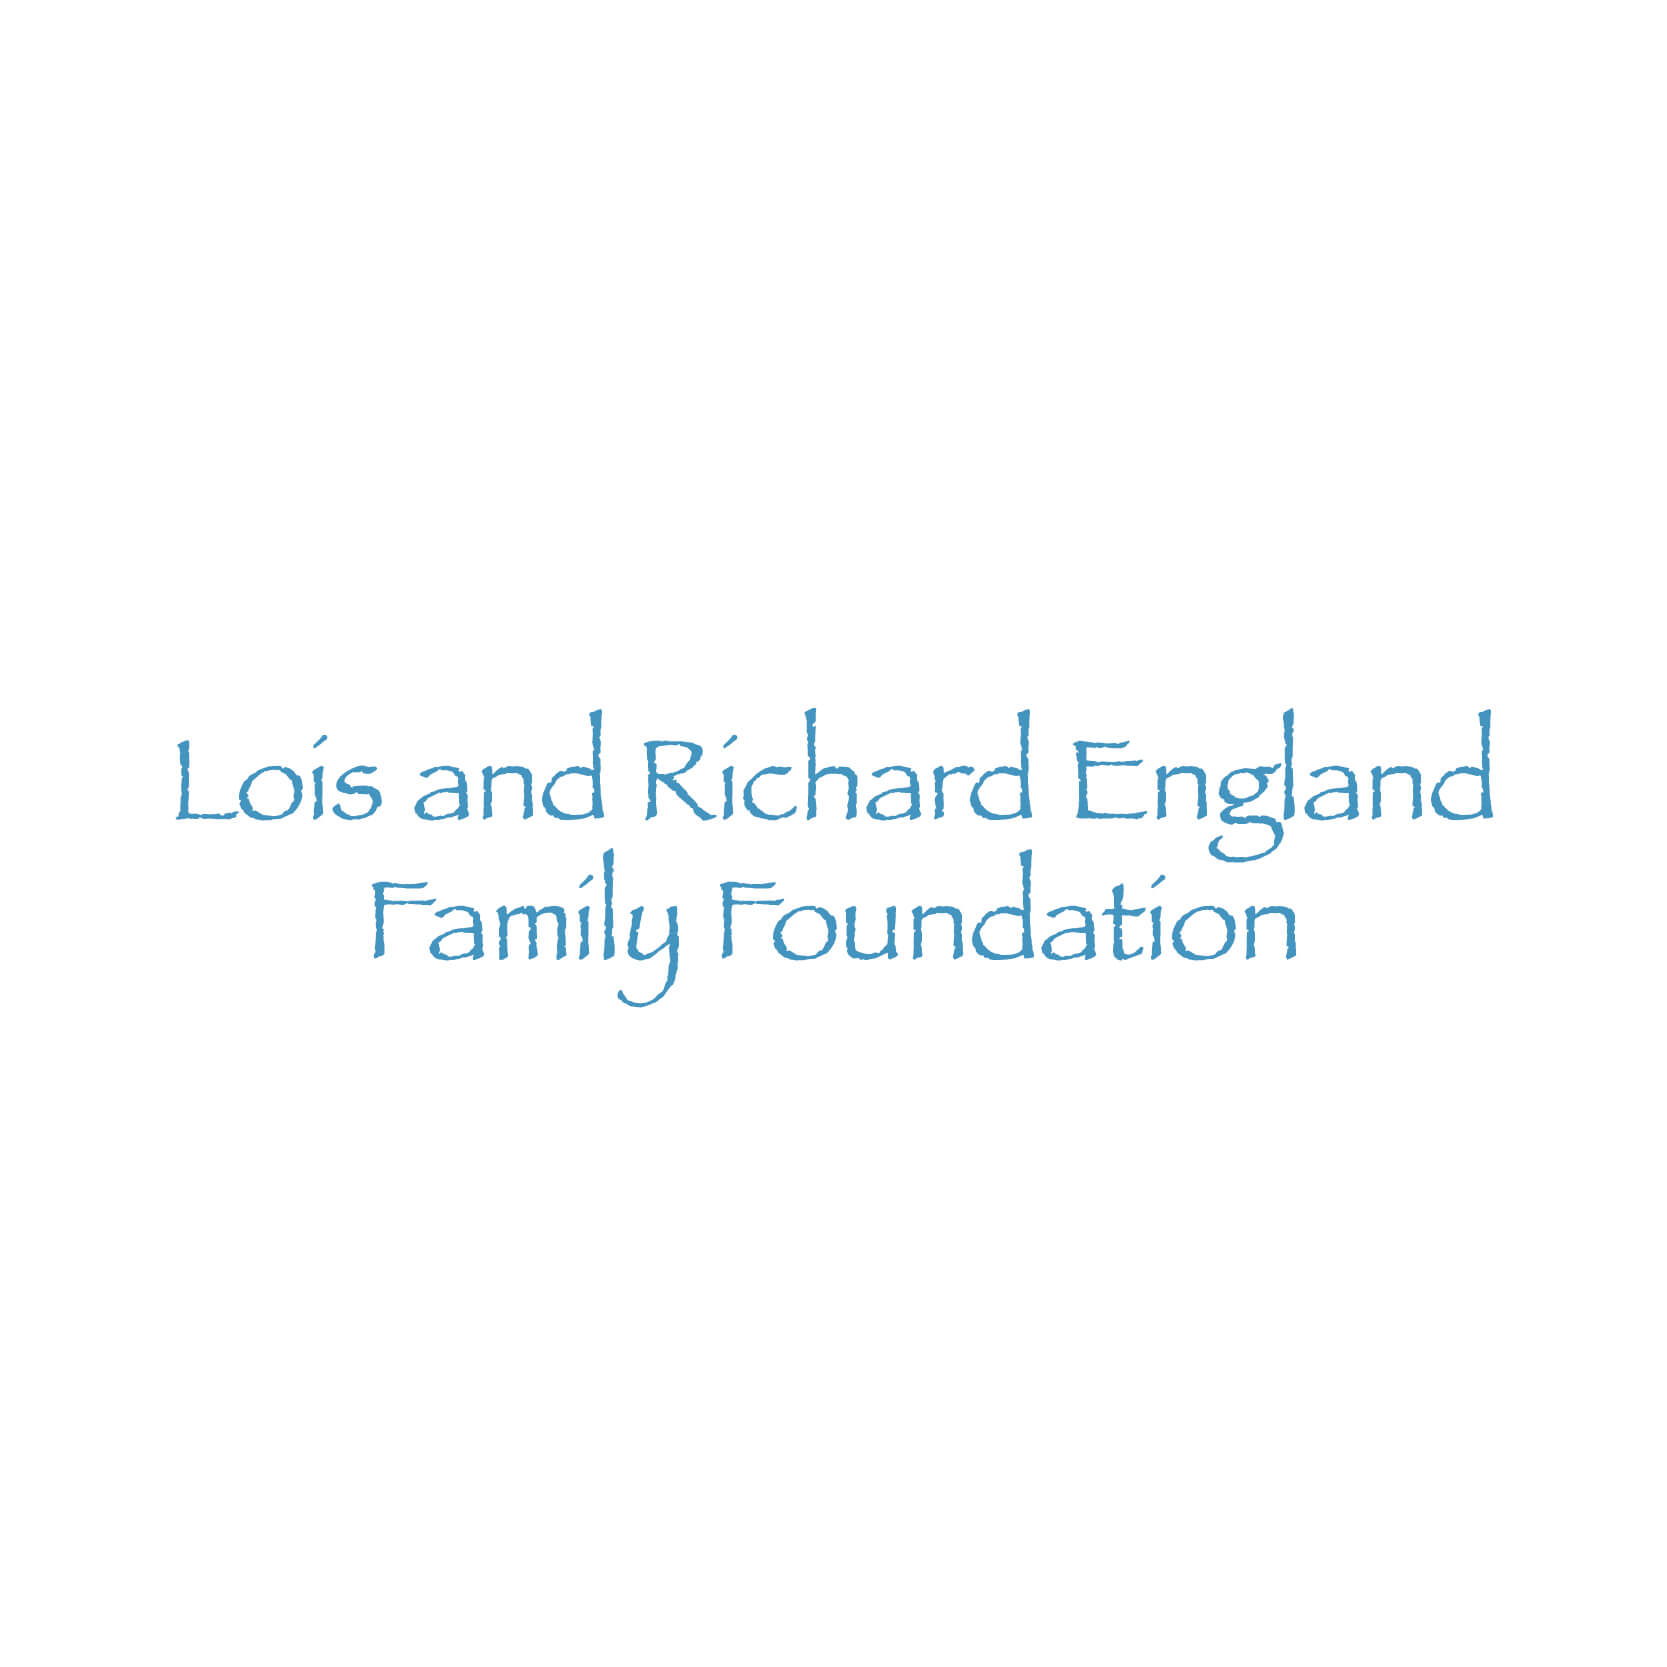 The Lois & Richard England Family Foundation